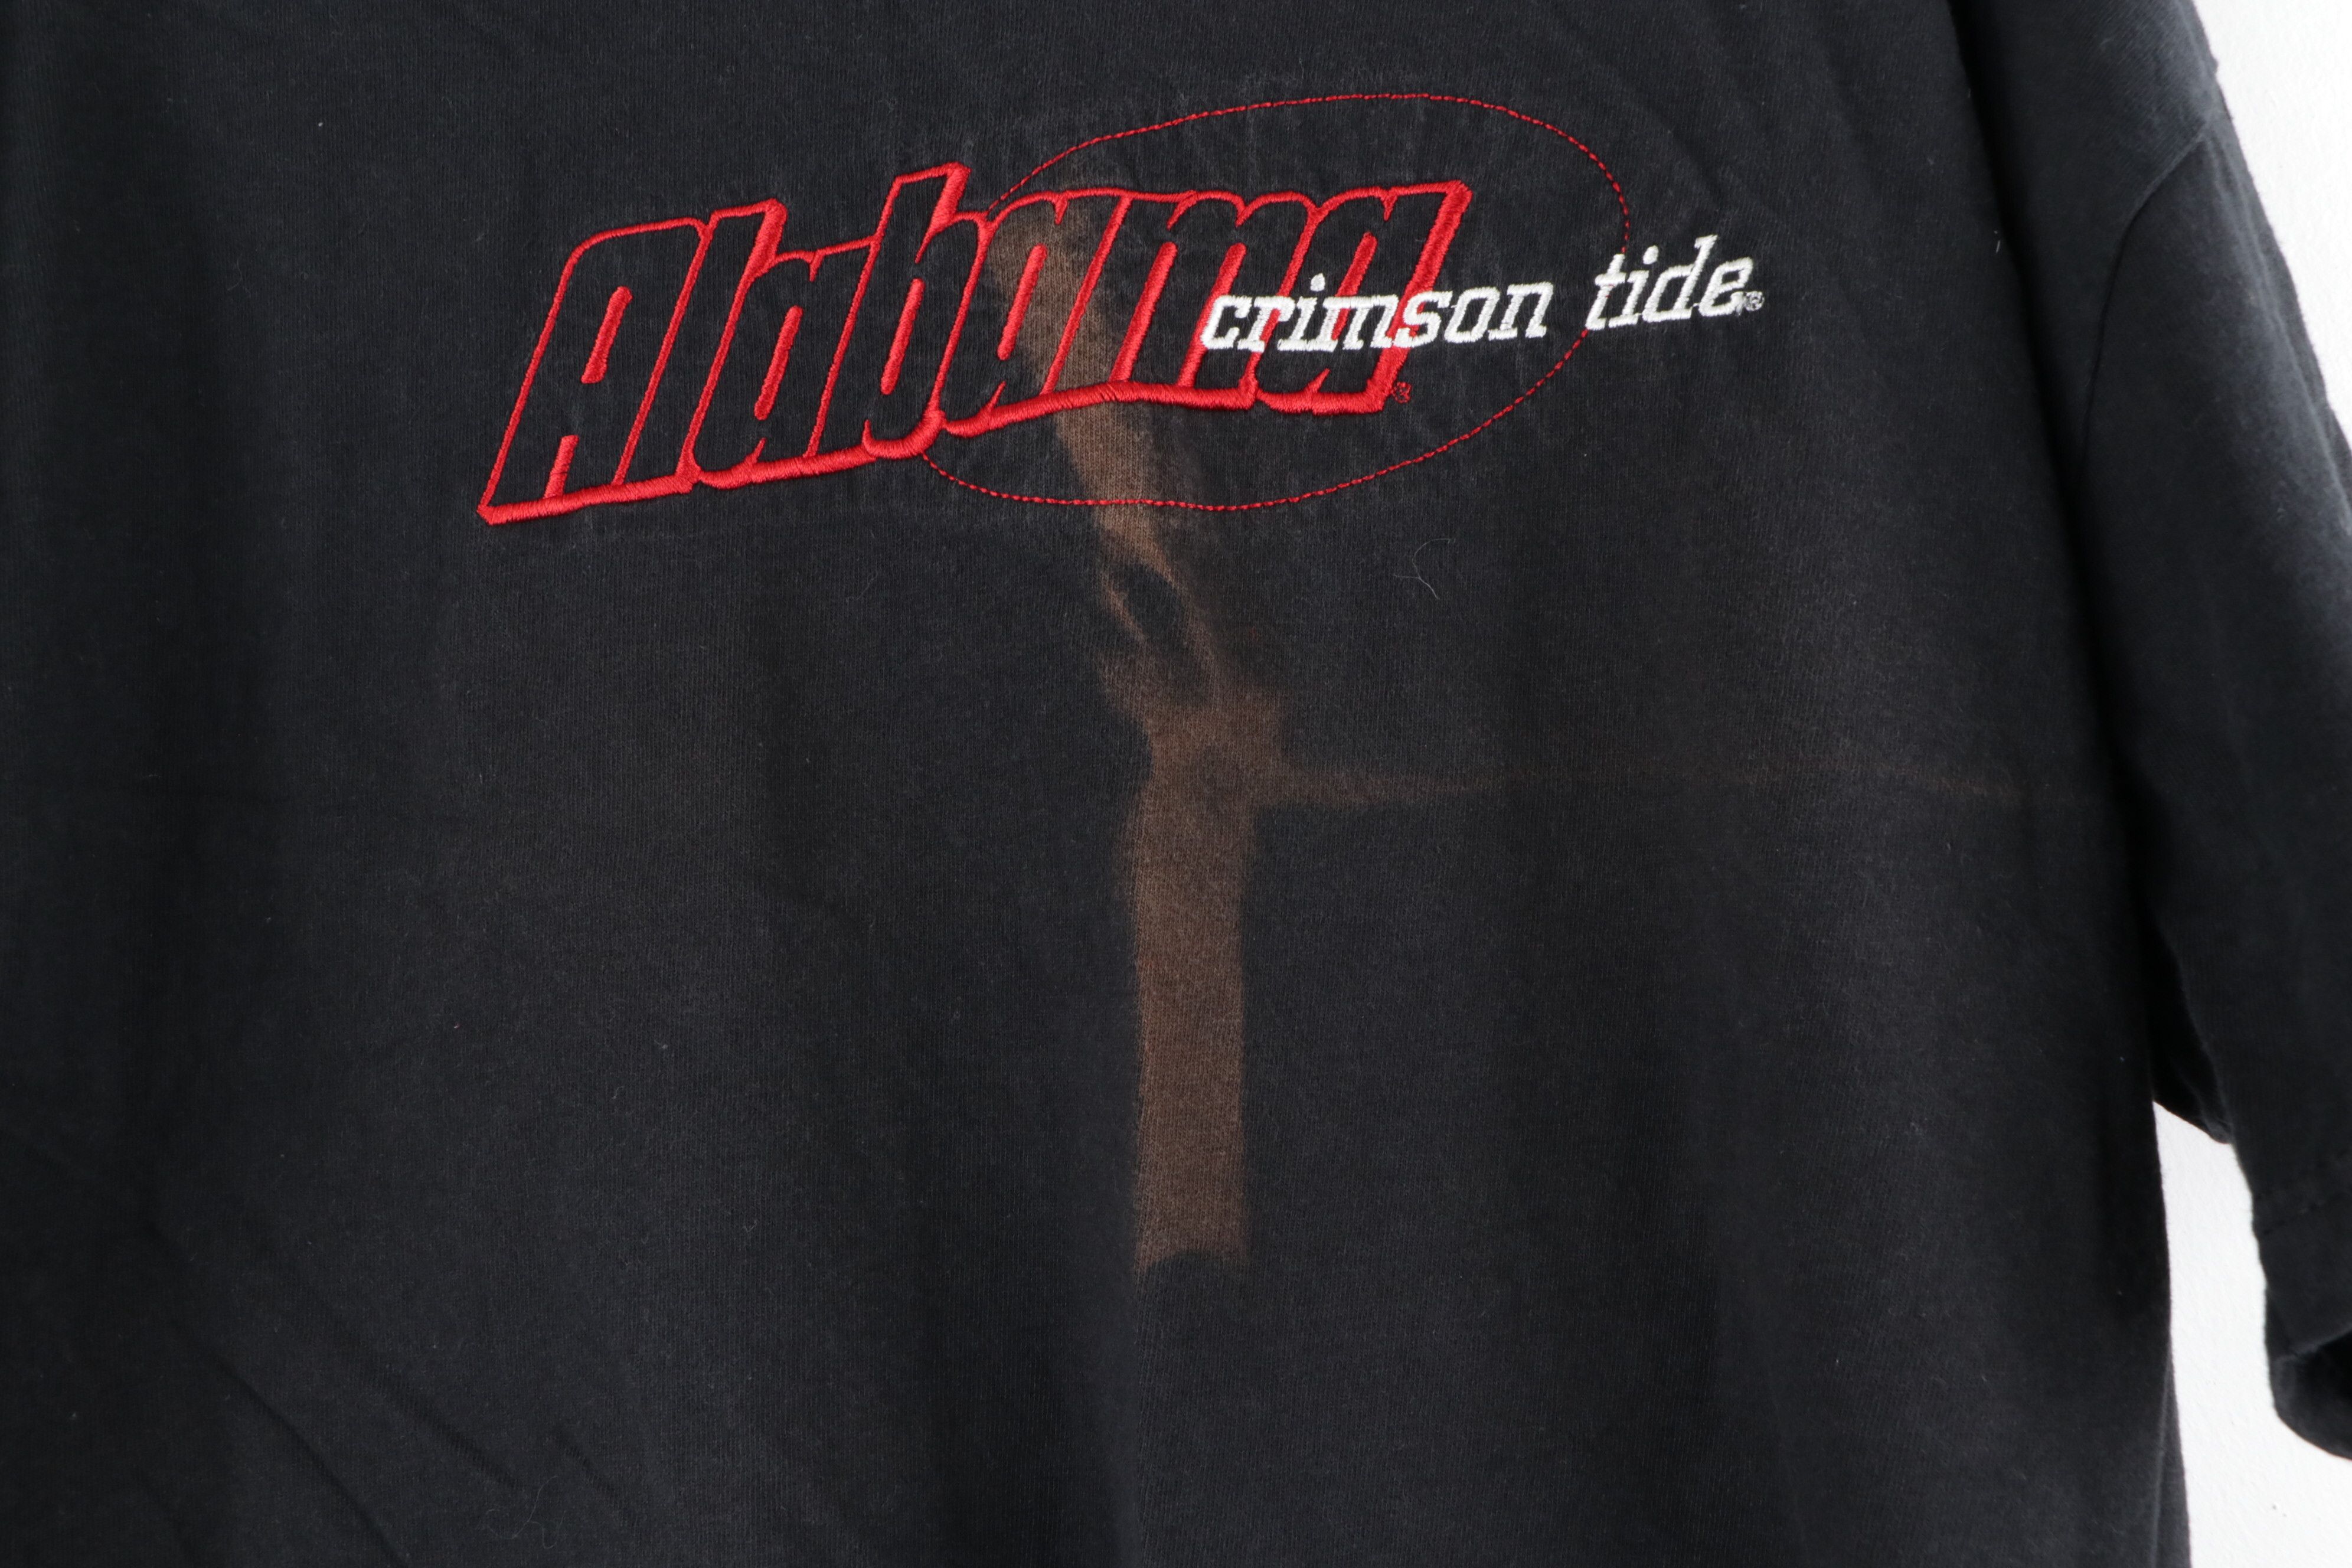 Vintage Vintage 90s Alabama Crimson Tide Stitched T Shirt Size US L / EU 52-54 / 3 - 4 Thumbnail